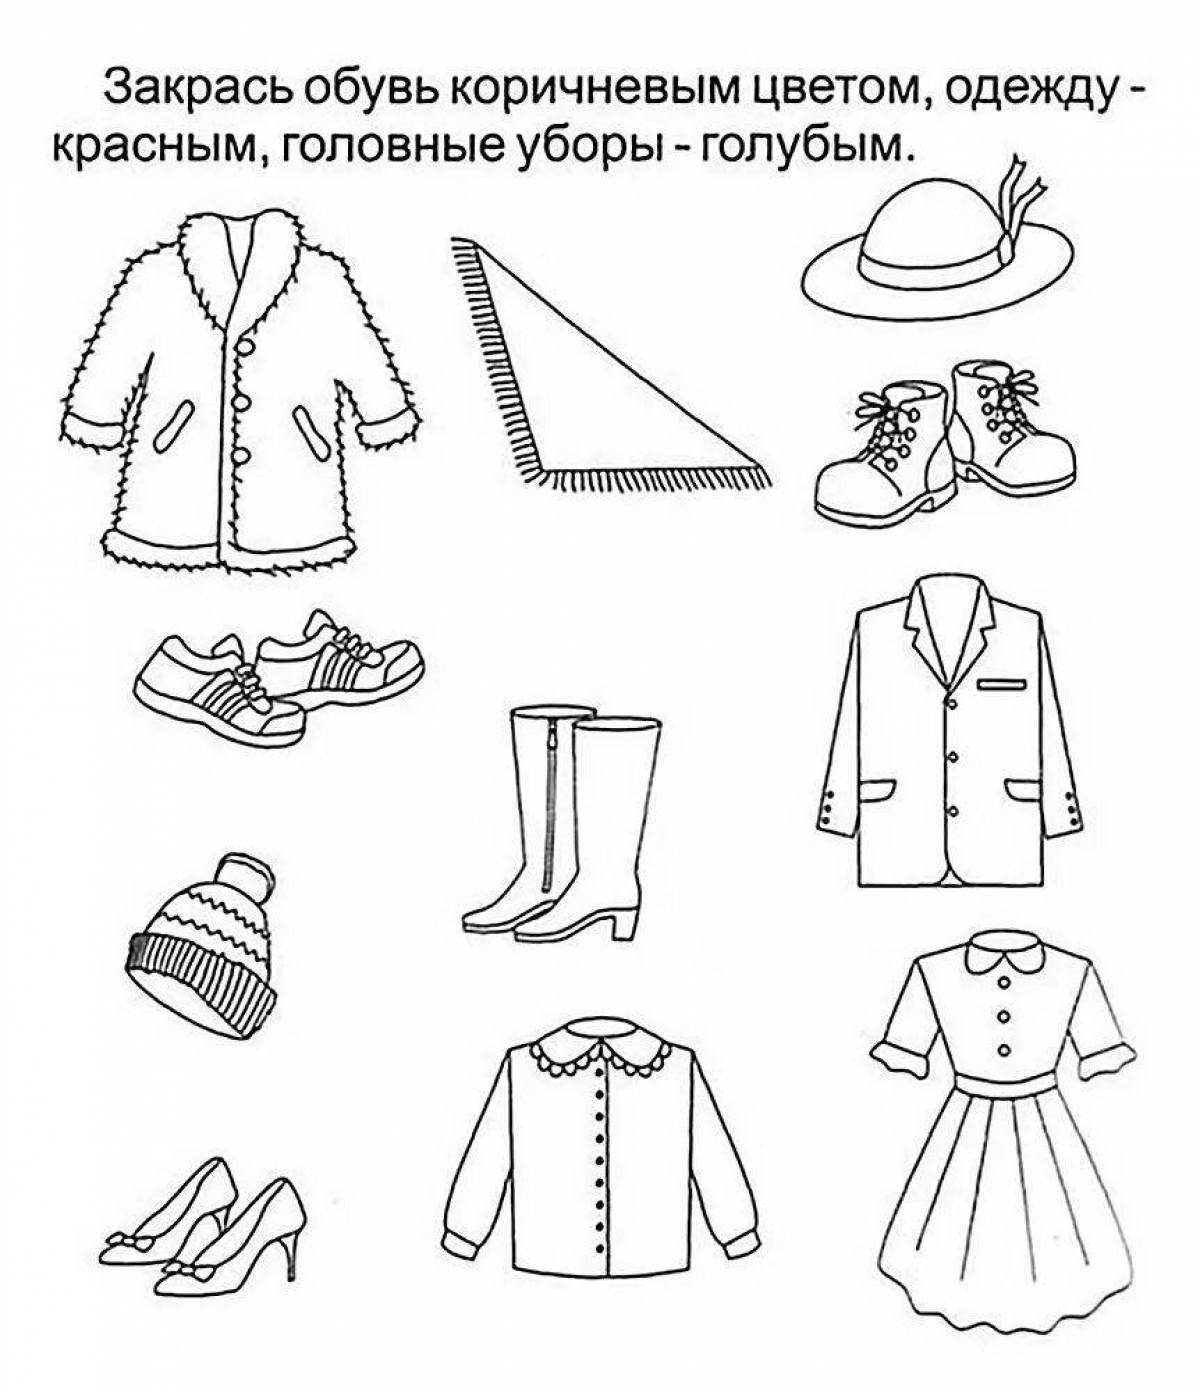 Сайт учителя изобразительного искусства Белозеровой Натальи Николаевны